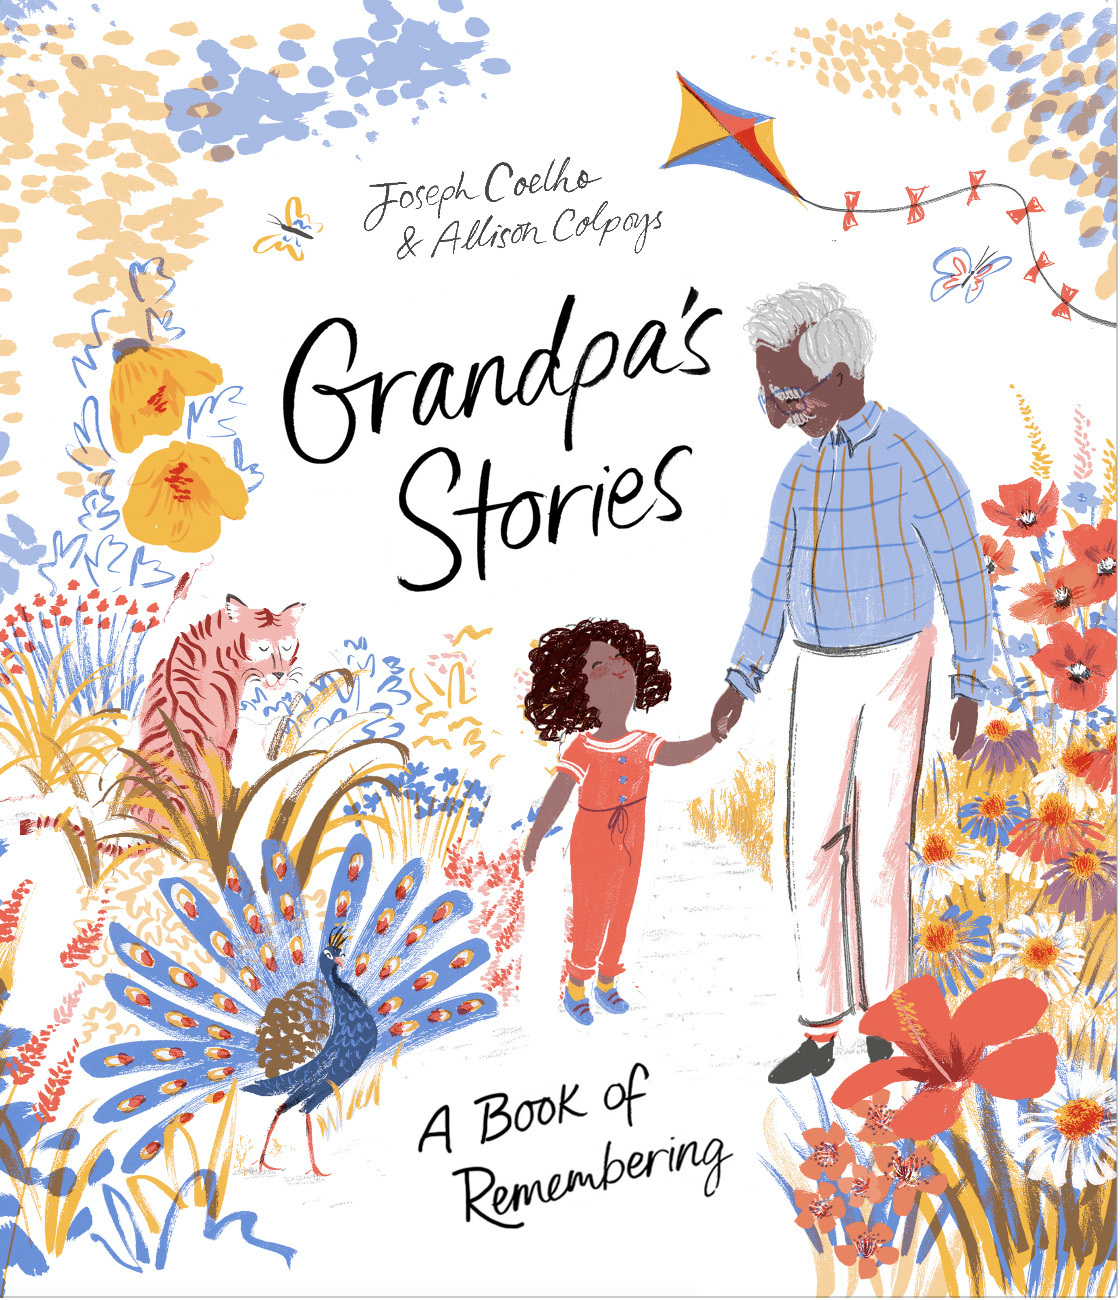 Grandpas stories by joseph coelho